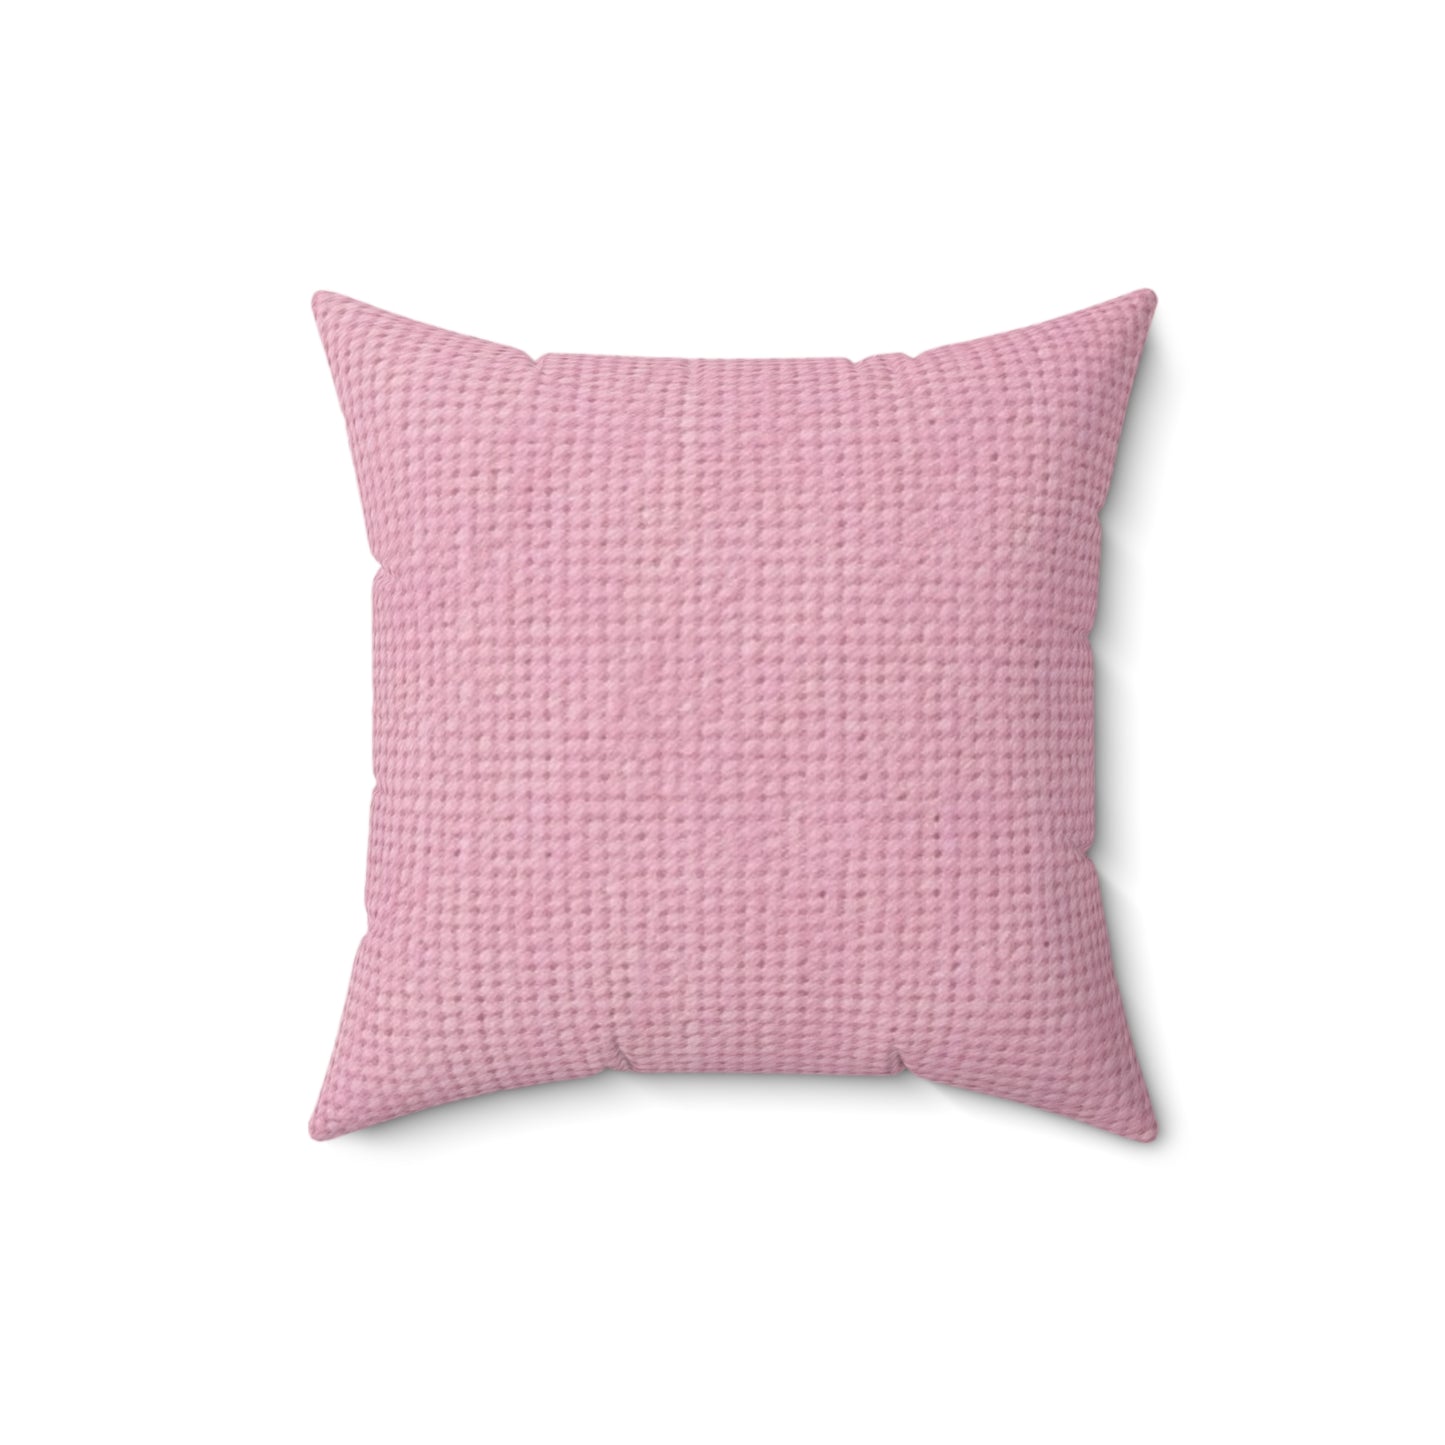 Blushing Garment Dye Pink: Denim-Inspired, Soft-Toned Fabric - Spun Polyester Square Pillow